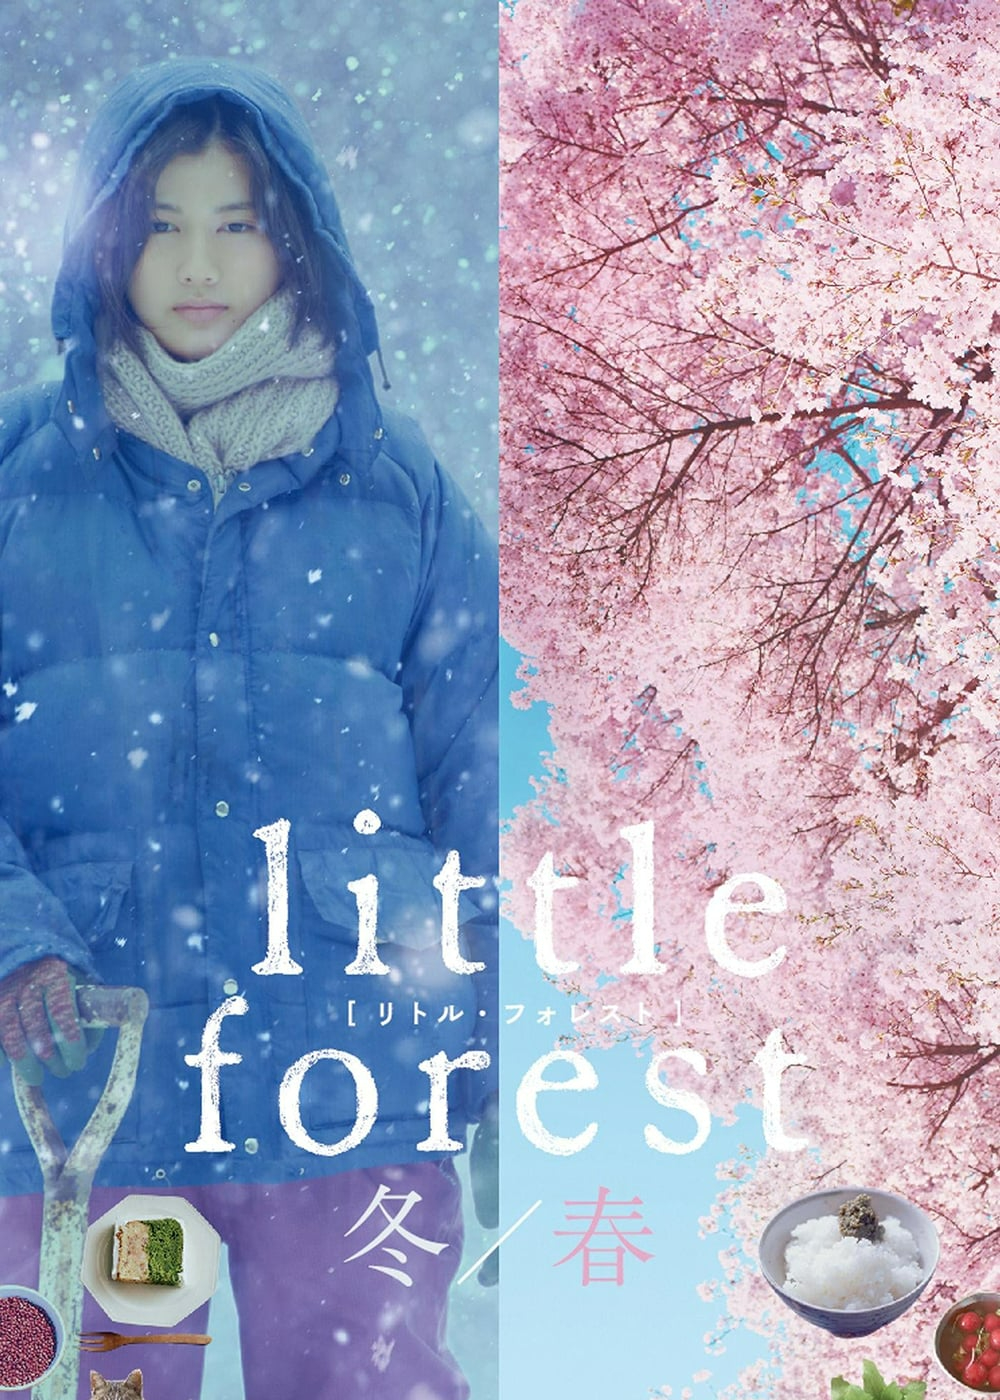 Banner Phim Khu Rừng Nhỏ: Đông/Xuân (Little Forest: Winter/Spring)